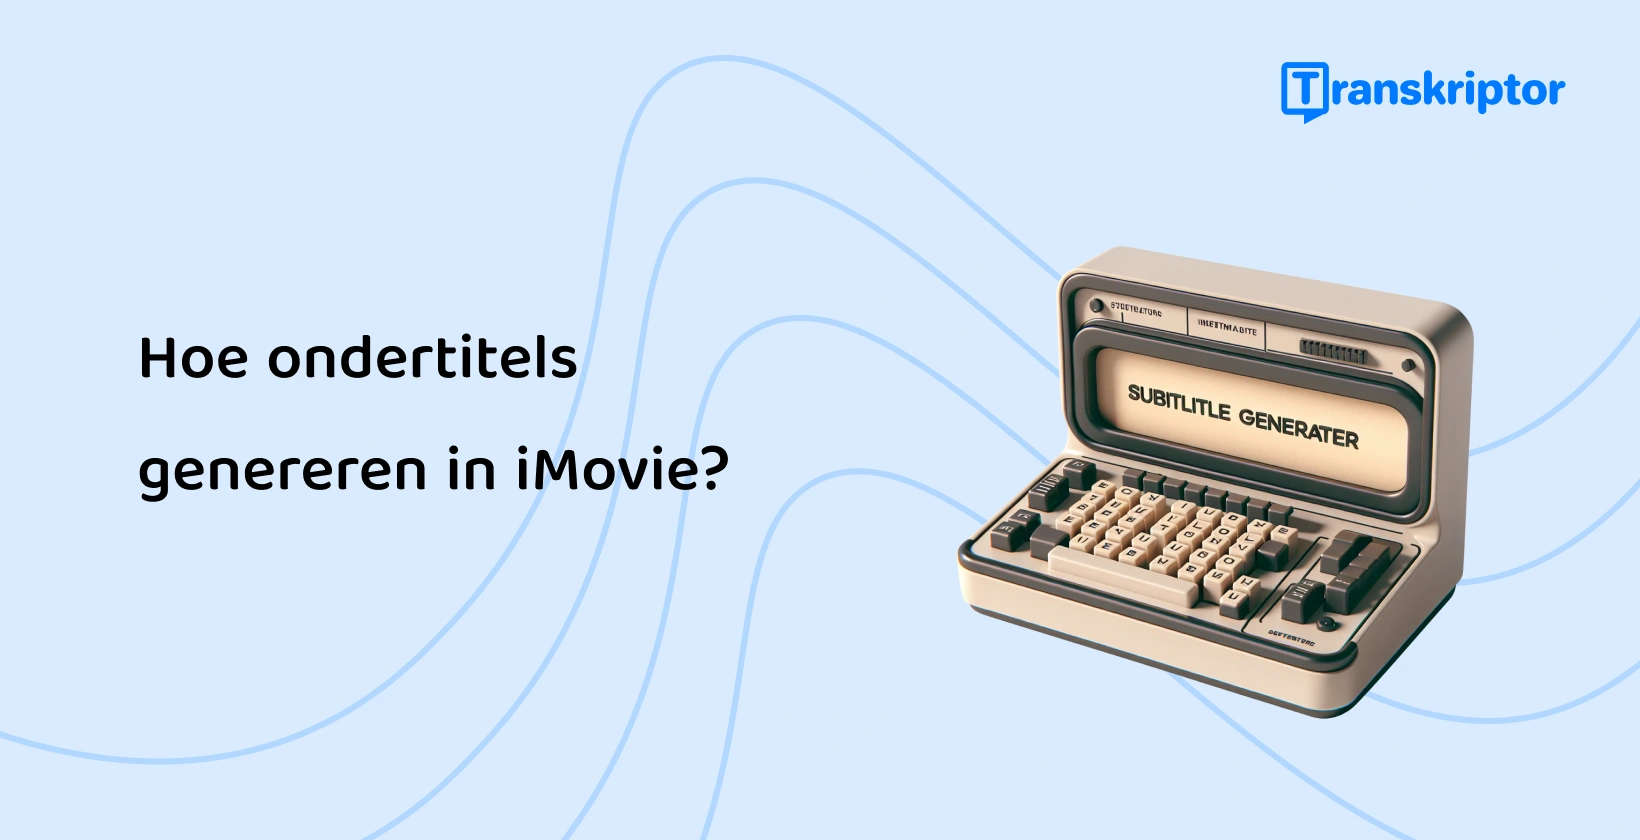 Een vintage typemachine voor het genereren van ondertitels die het proces van het maken van ondertitels in iMovie symboliseert, waardoor de toegankelijkheid van video's wordt verbeterd.